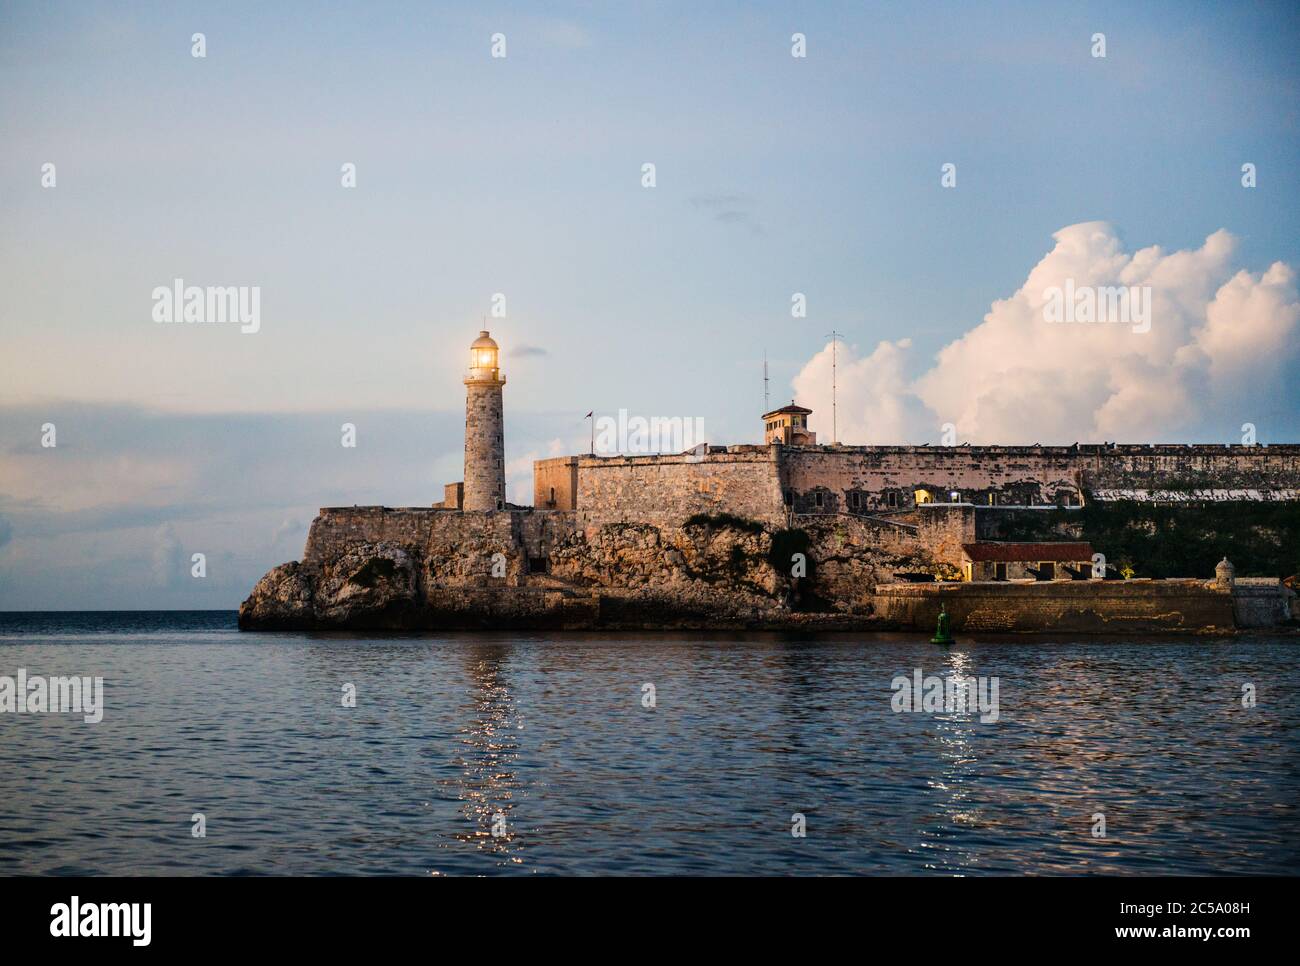 Le château de Morro, le fort d'El Morro et le phare sur l'eau à la Havane, Cuba, Caraïbes Banque D'Images